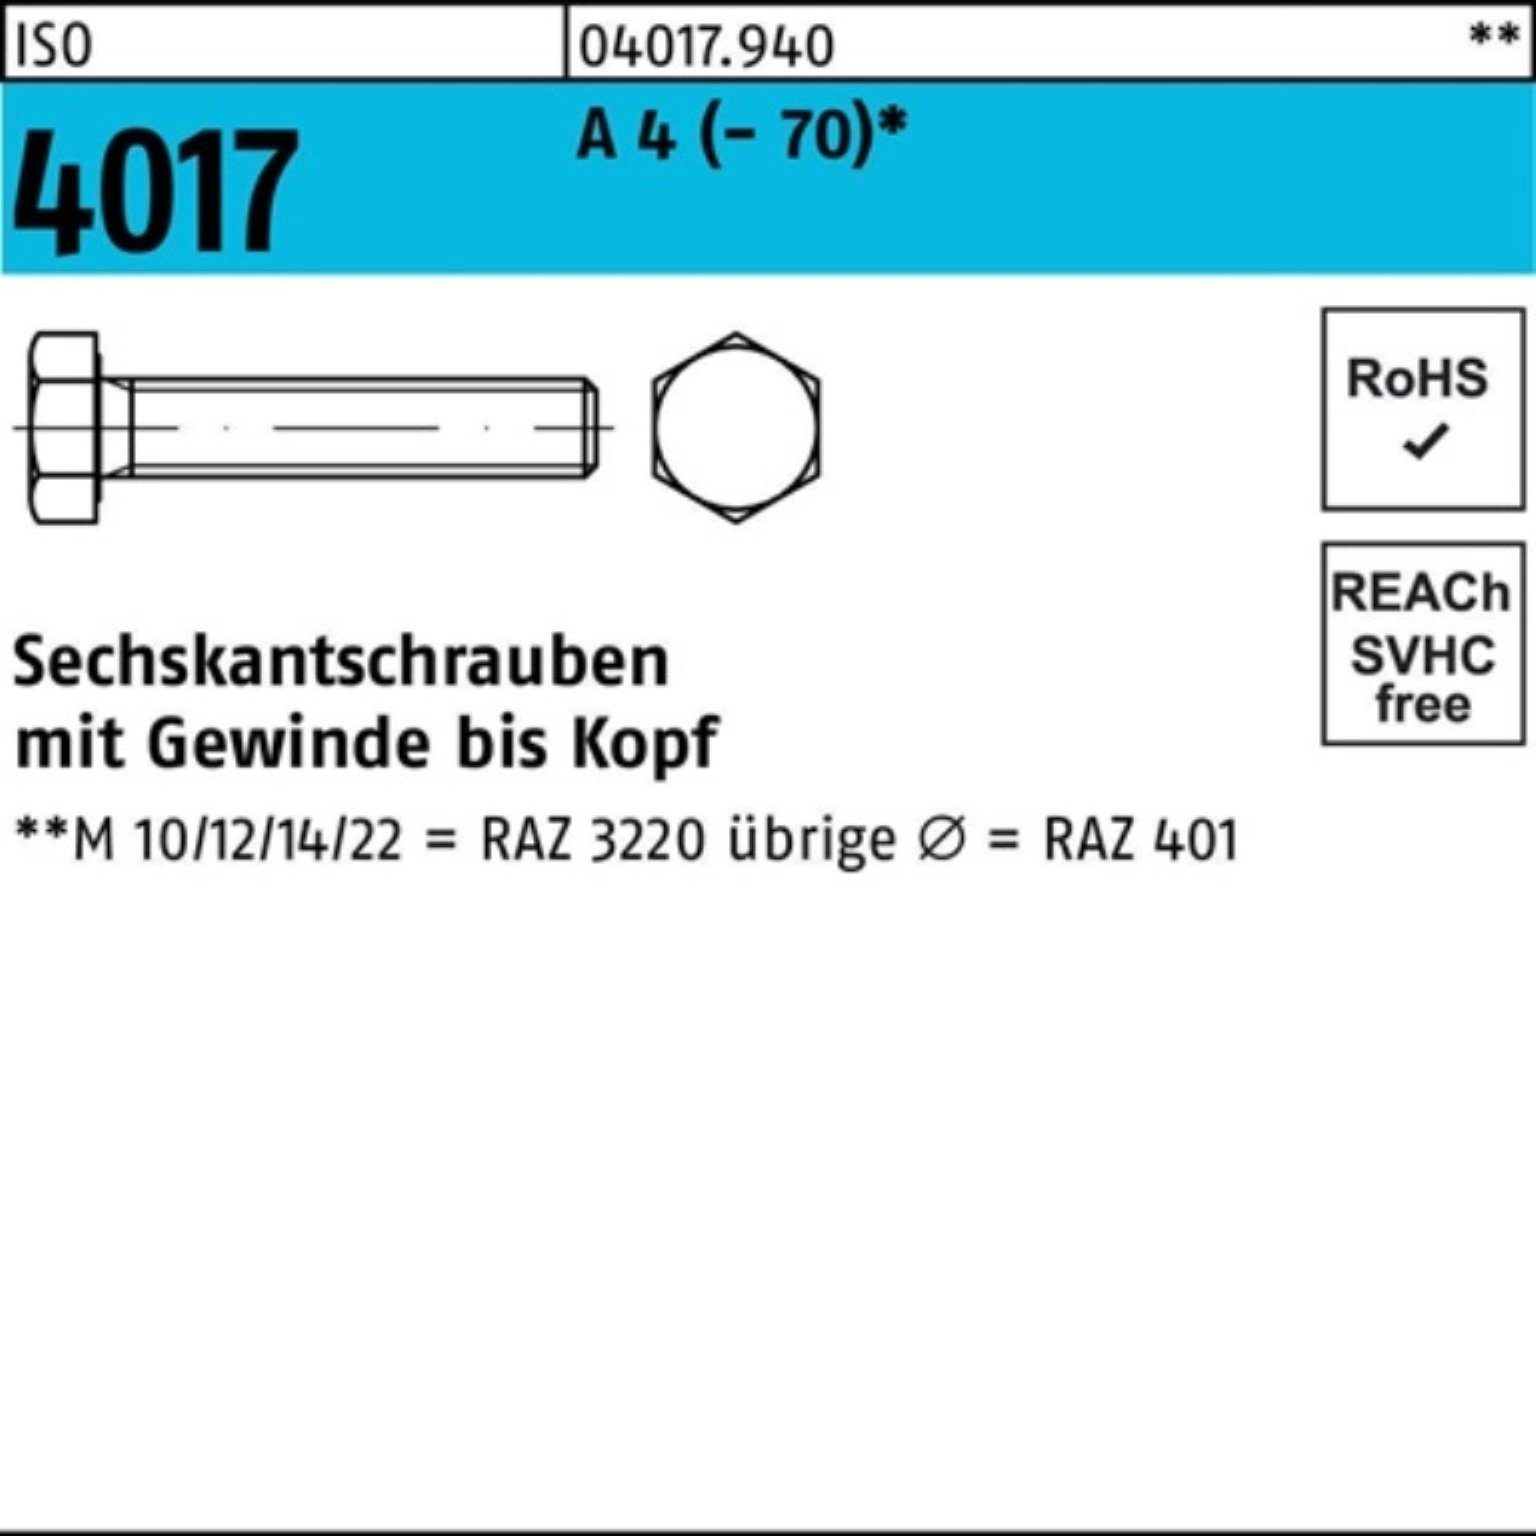 Bufab Sechskantschraube 100er Pack Sechskantschraube ISO 4017 VG M5x 20 A 4 (70) 100 Stück